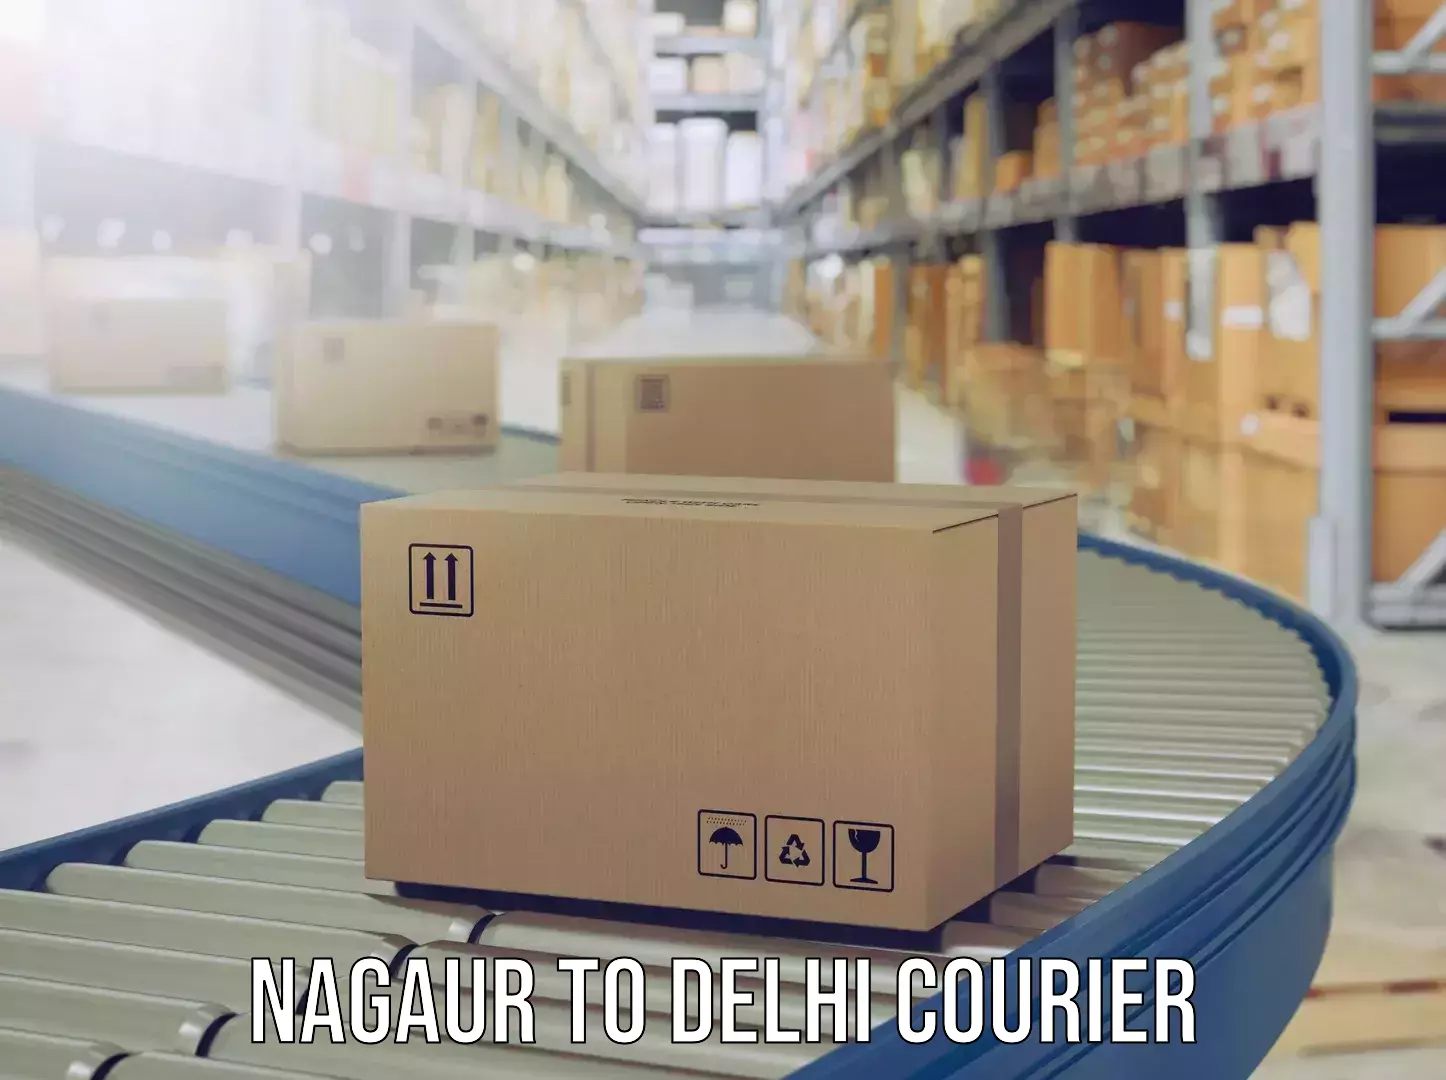 Door-to-door baggage service Nagaur to Delhi